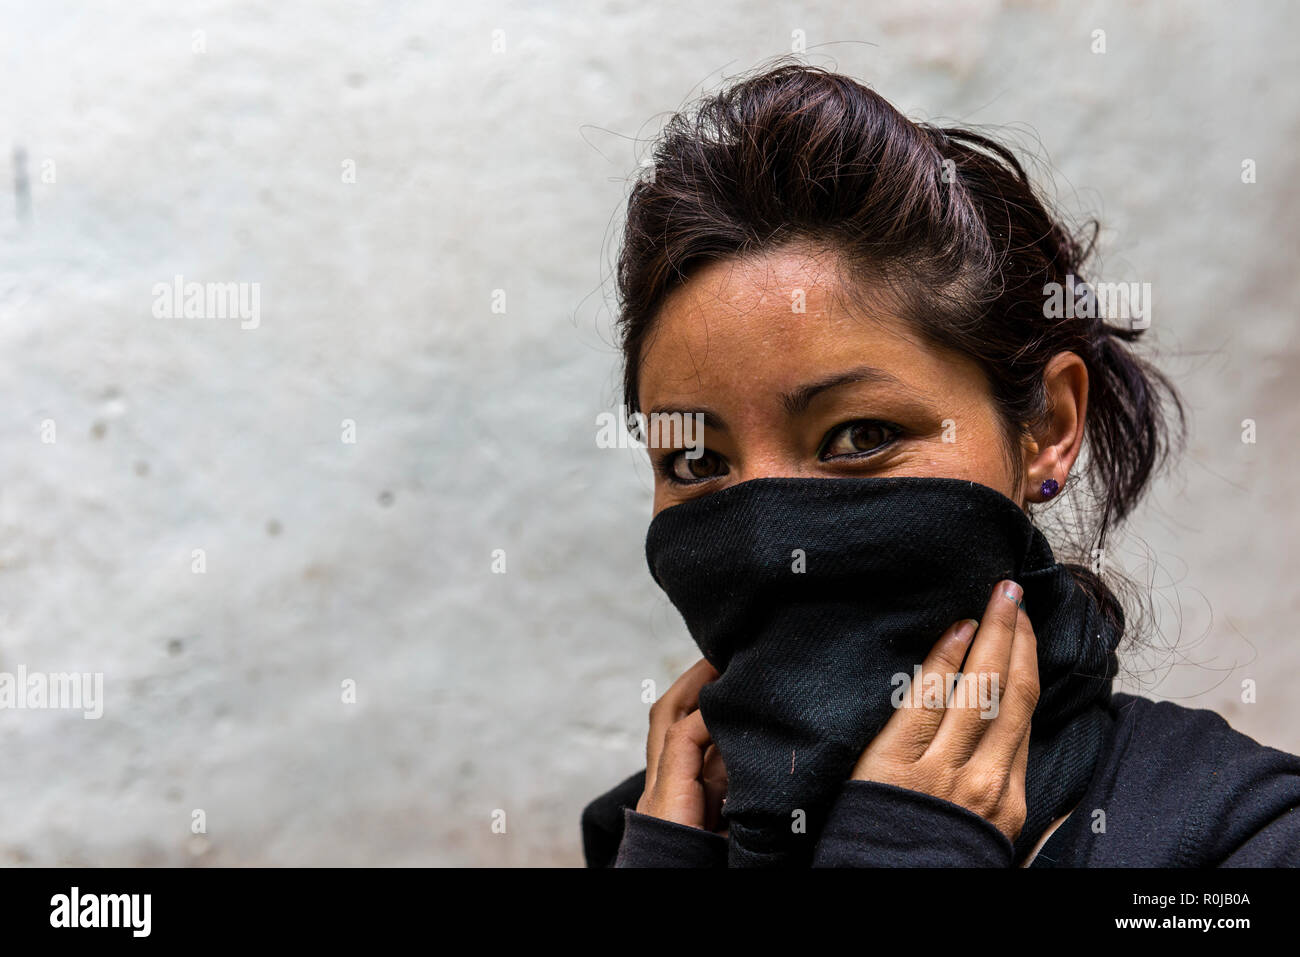 Das Porträt einer jungen lokalen Frau, die ihr Gesicht von der Kälte durch einen schwarzen Schal. Stockfoto